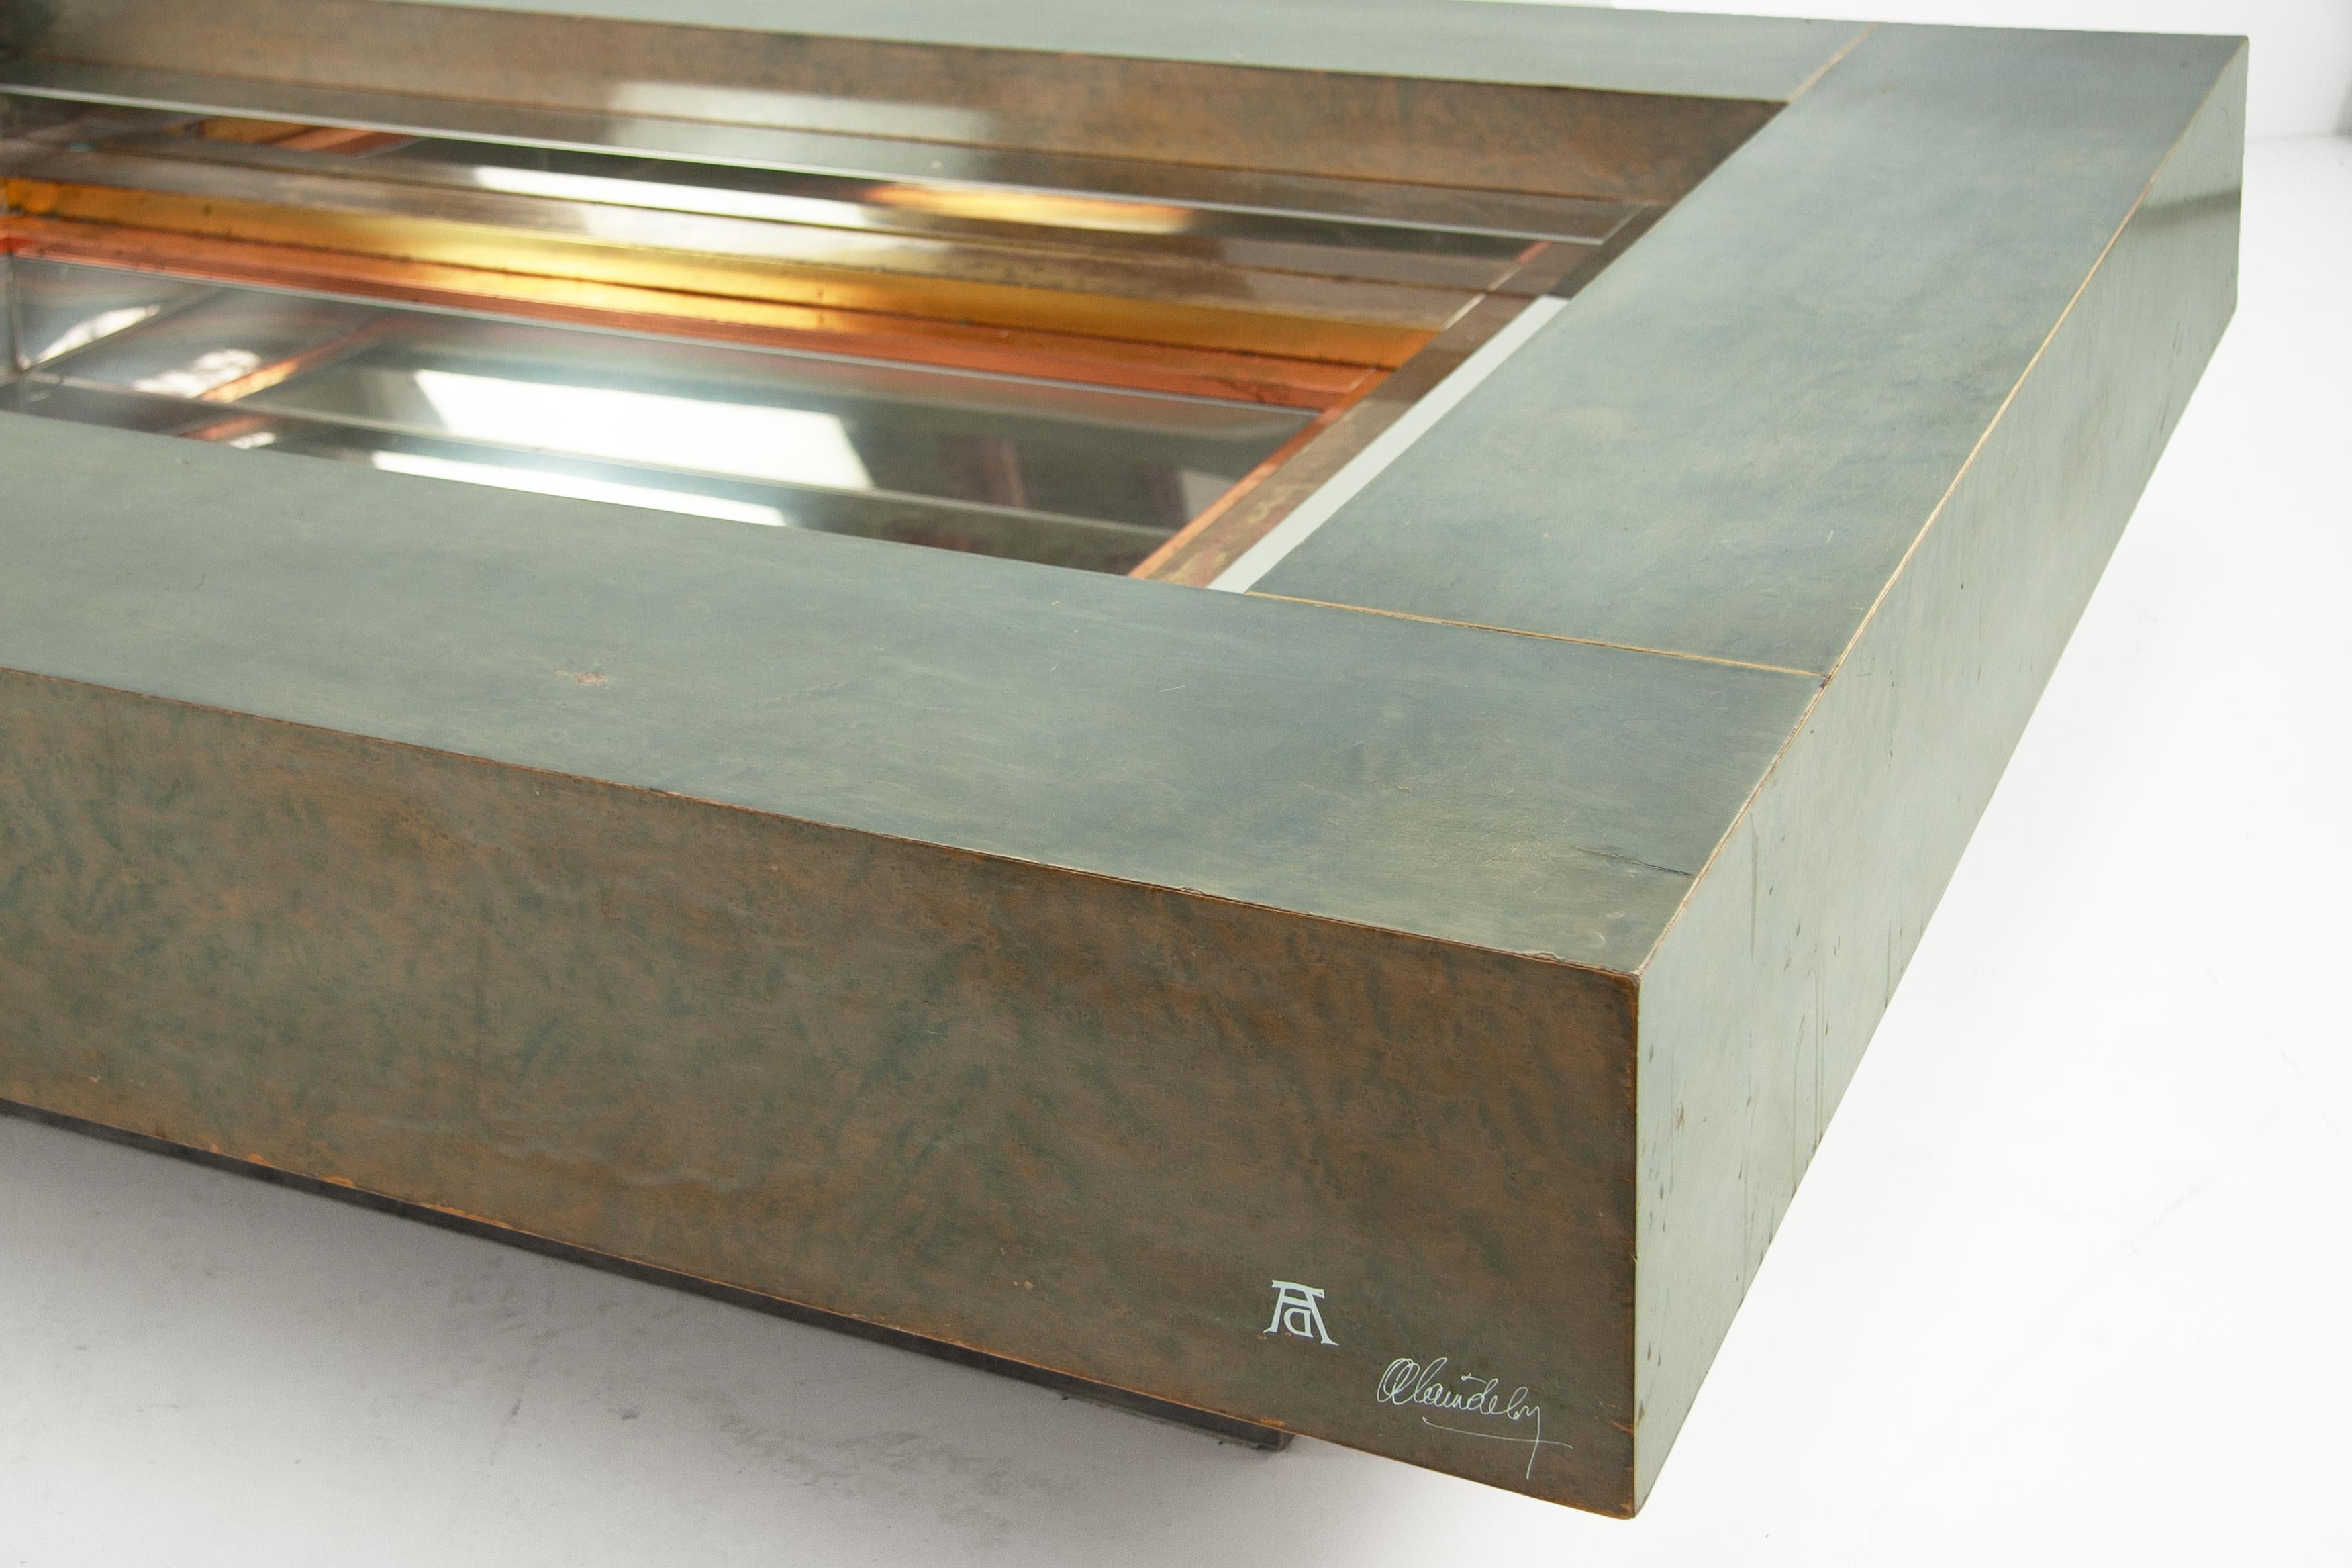 La table basse Alain Delon est un meuble élégant et raffiné conçu par le célèbre acteur français Alain Delon en collaboration avec la Maison Jansen. Cette table basse se caractérise par ses lignes épurées, son design minimaliste et ses matériaux de